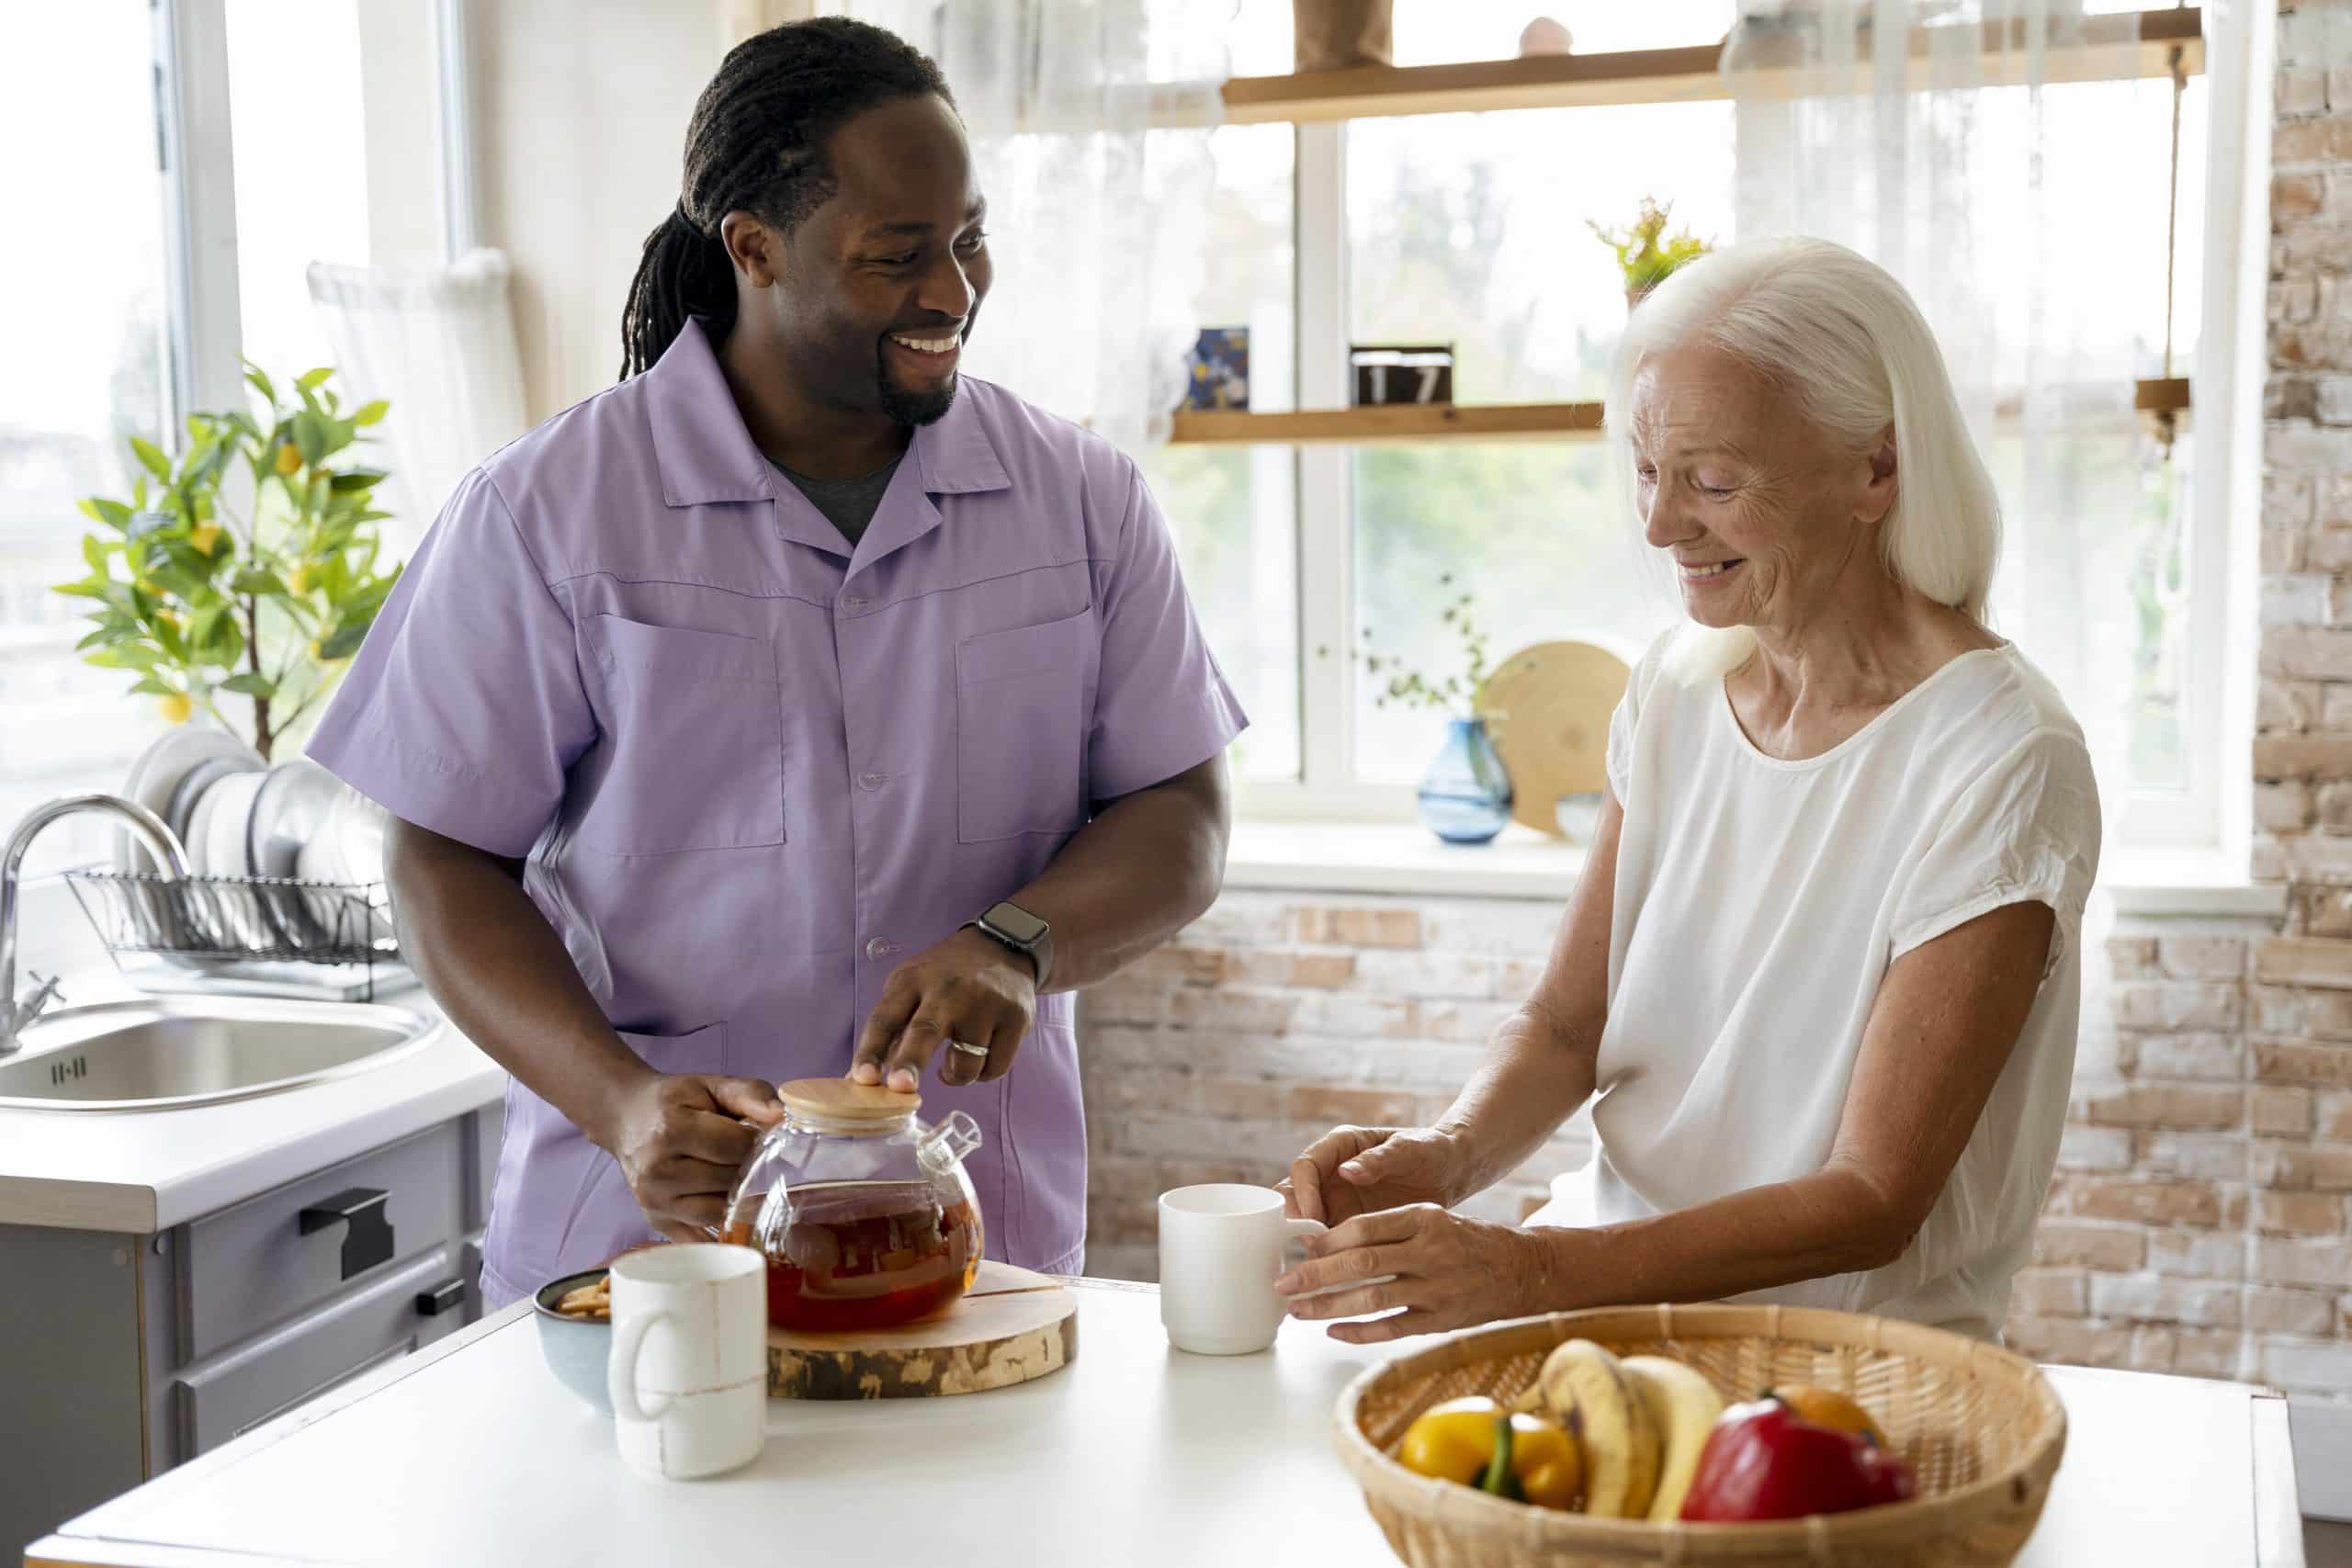 Manipulación de alimentos en el trabajo de ayuda domiciliaria. En la foto se ve a un trabajador social sirviendo té a una mujer mayor en su casa.